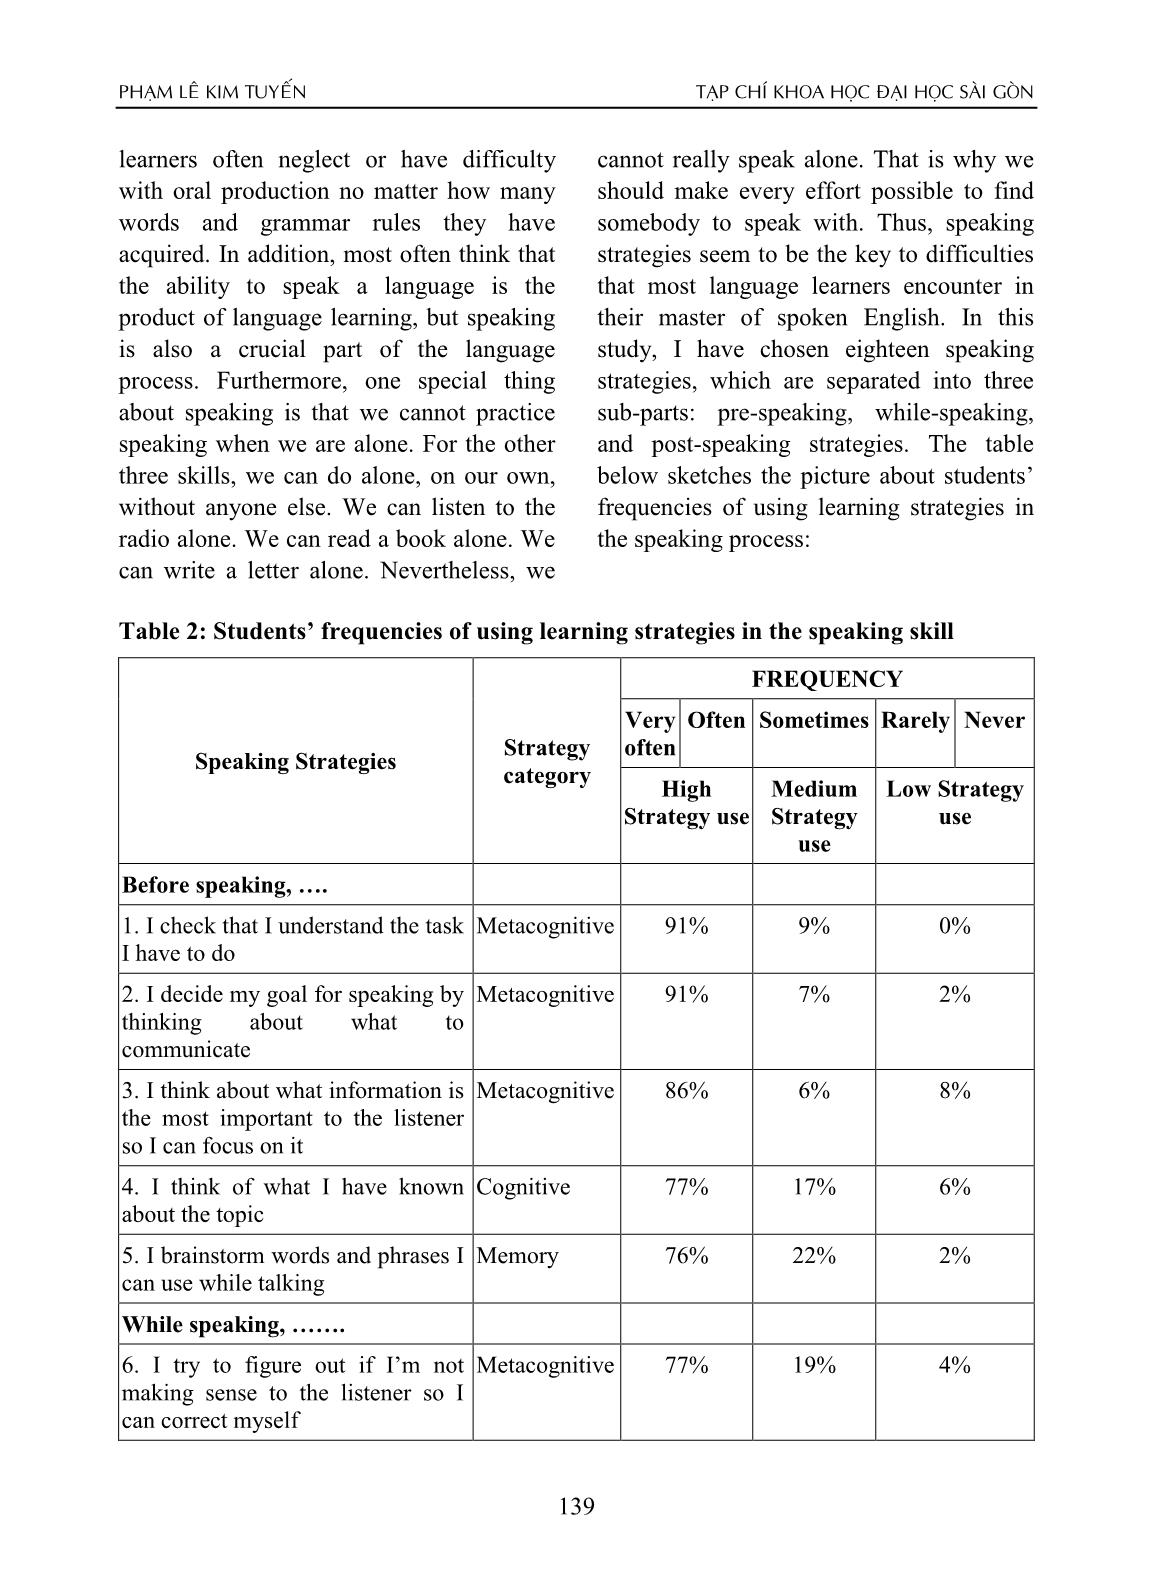 Khảo sát về tần suất sử dụng các chiến lược học tập của sinh viên năm hai chuyên ngữ trong việc học các kỹ năng nghe nói tiếng Anh ở Trường Đại học Sài Gòn trang 10